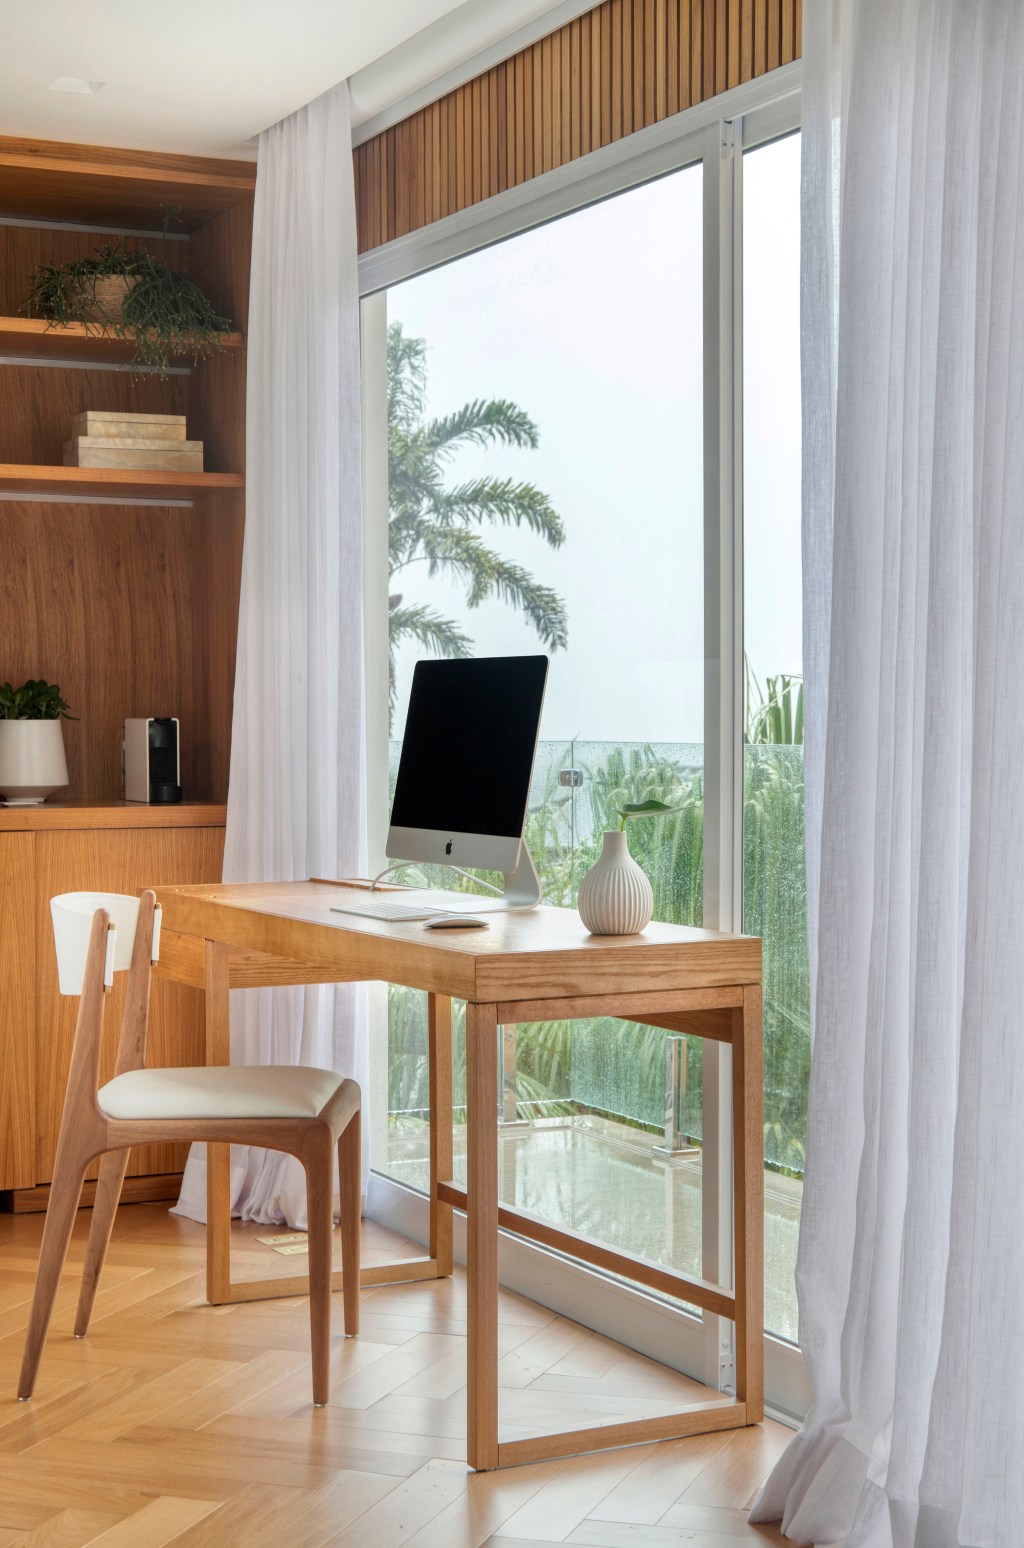 Suíte de 80 m2 clima hotel cinco estrelas Diego Raposo Manuela Simas decoração home office mesa cadeira madeira